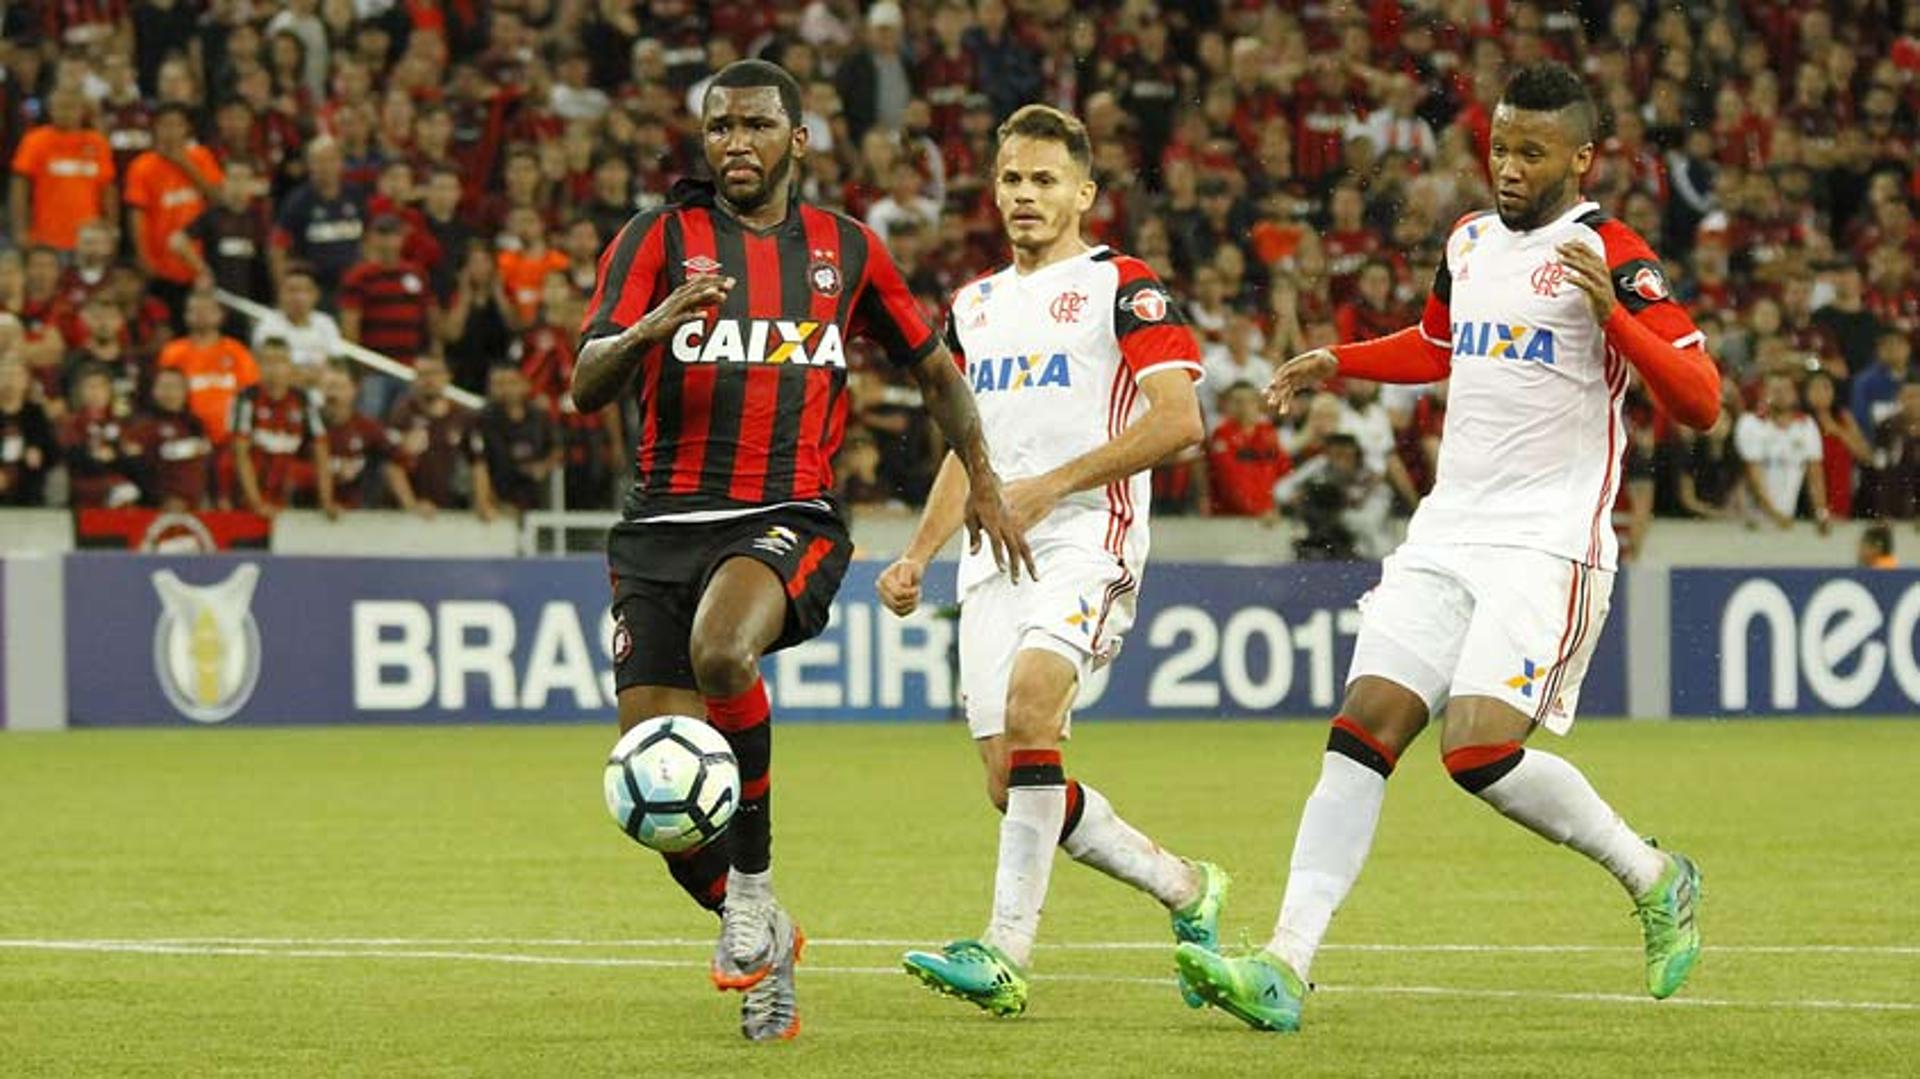 Atlético-PR 1 x 1 Flamengo: as imagens na Arena da Baixada